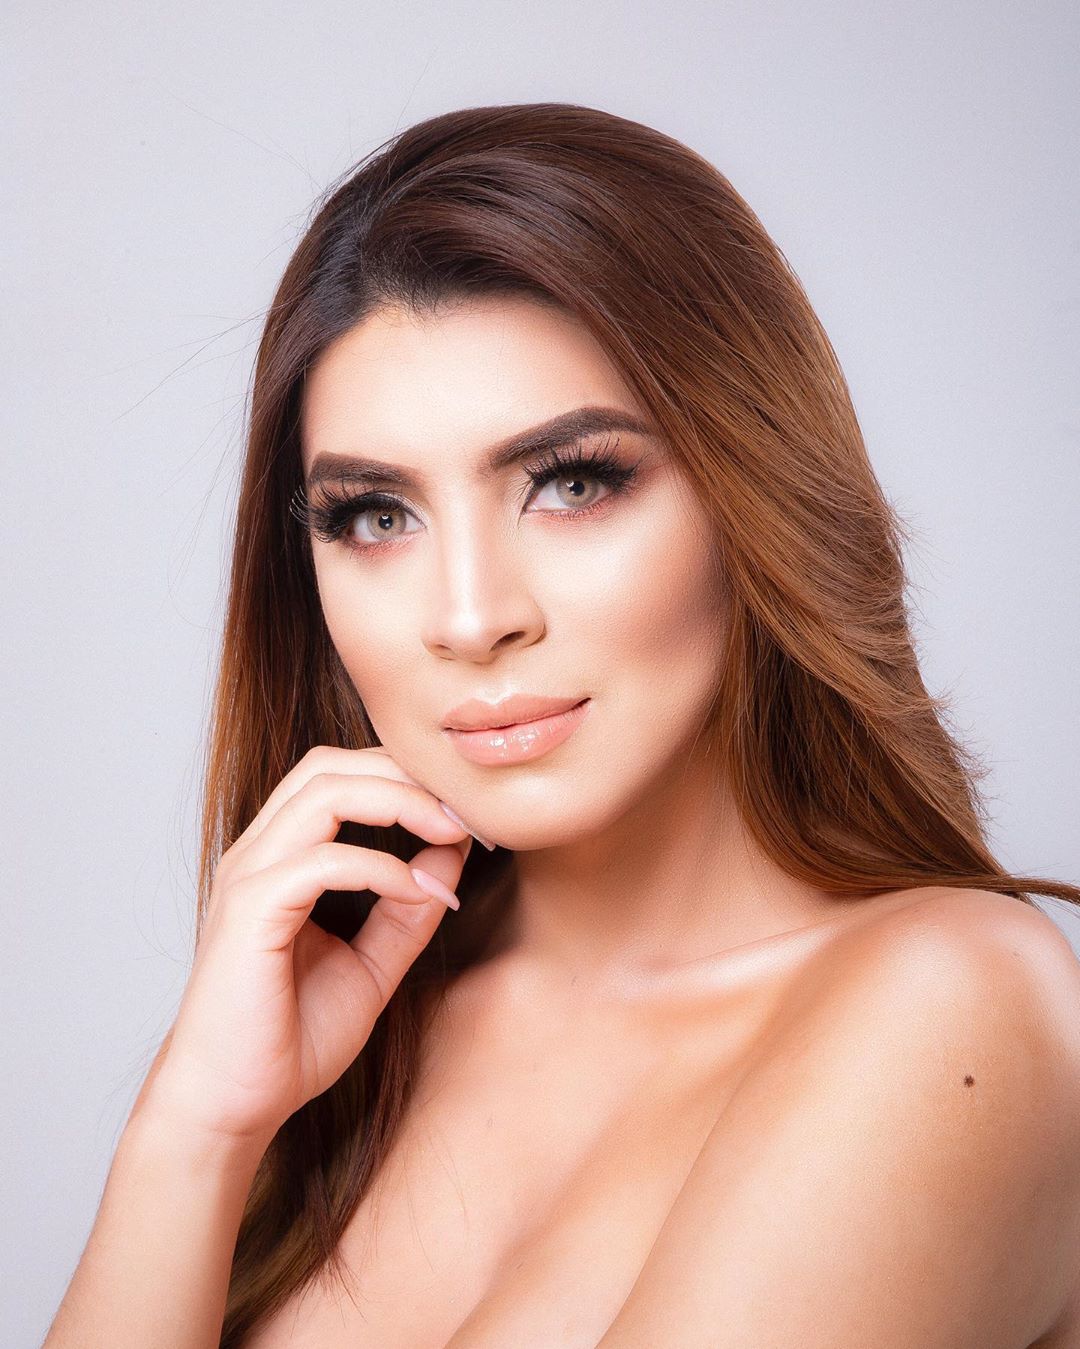 isabel-ortiz-most-beautiful-colombian-transgender-model-tg-beauty